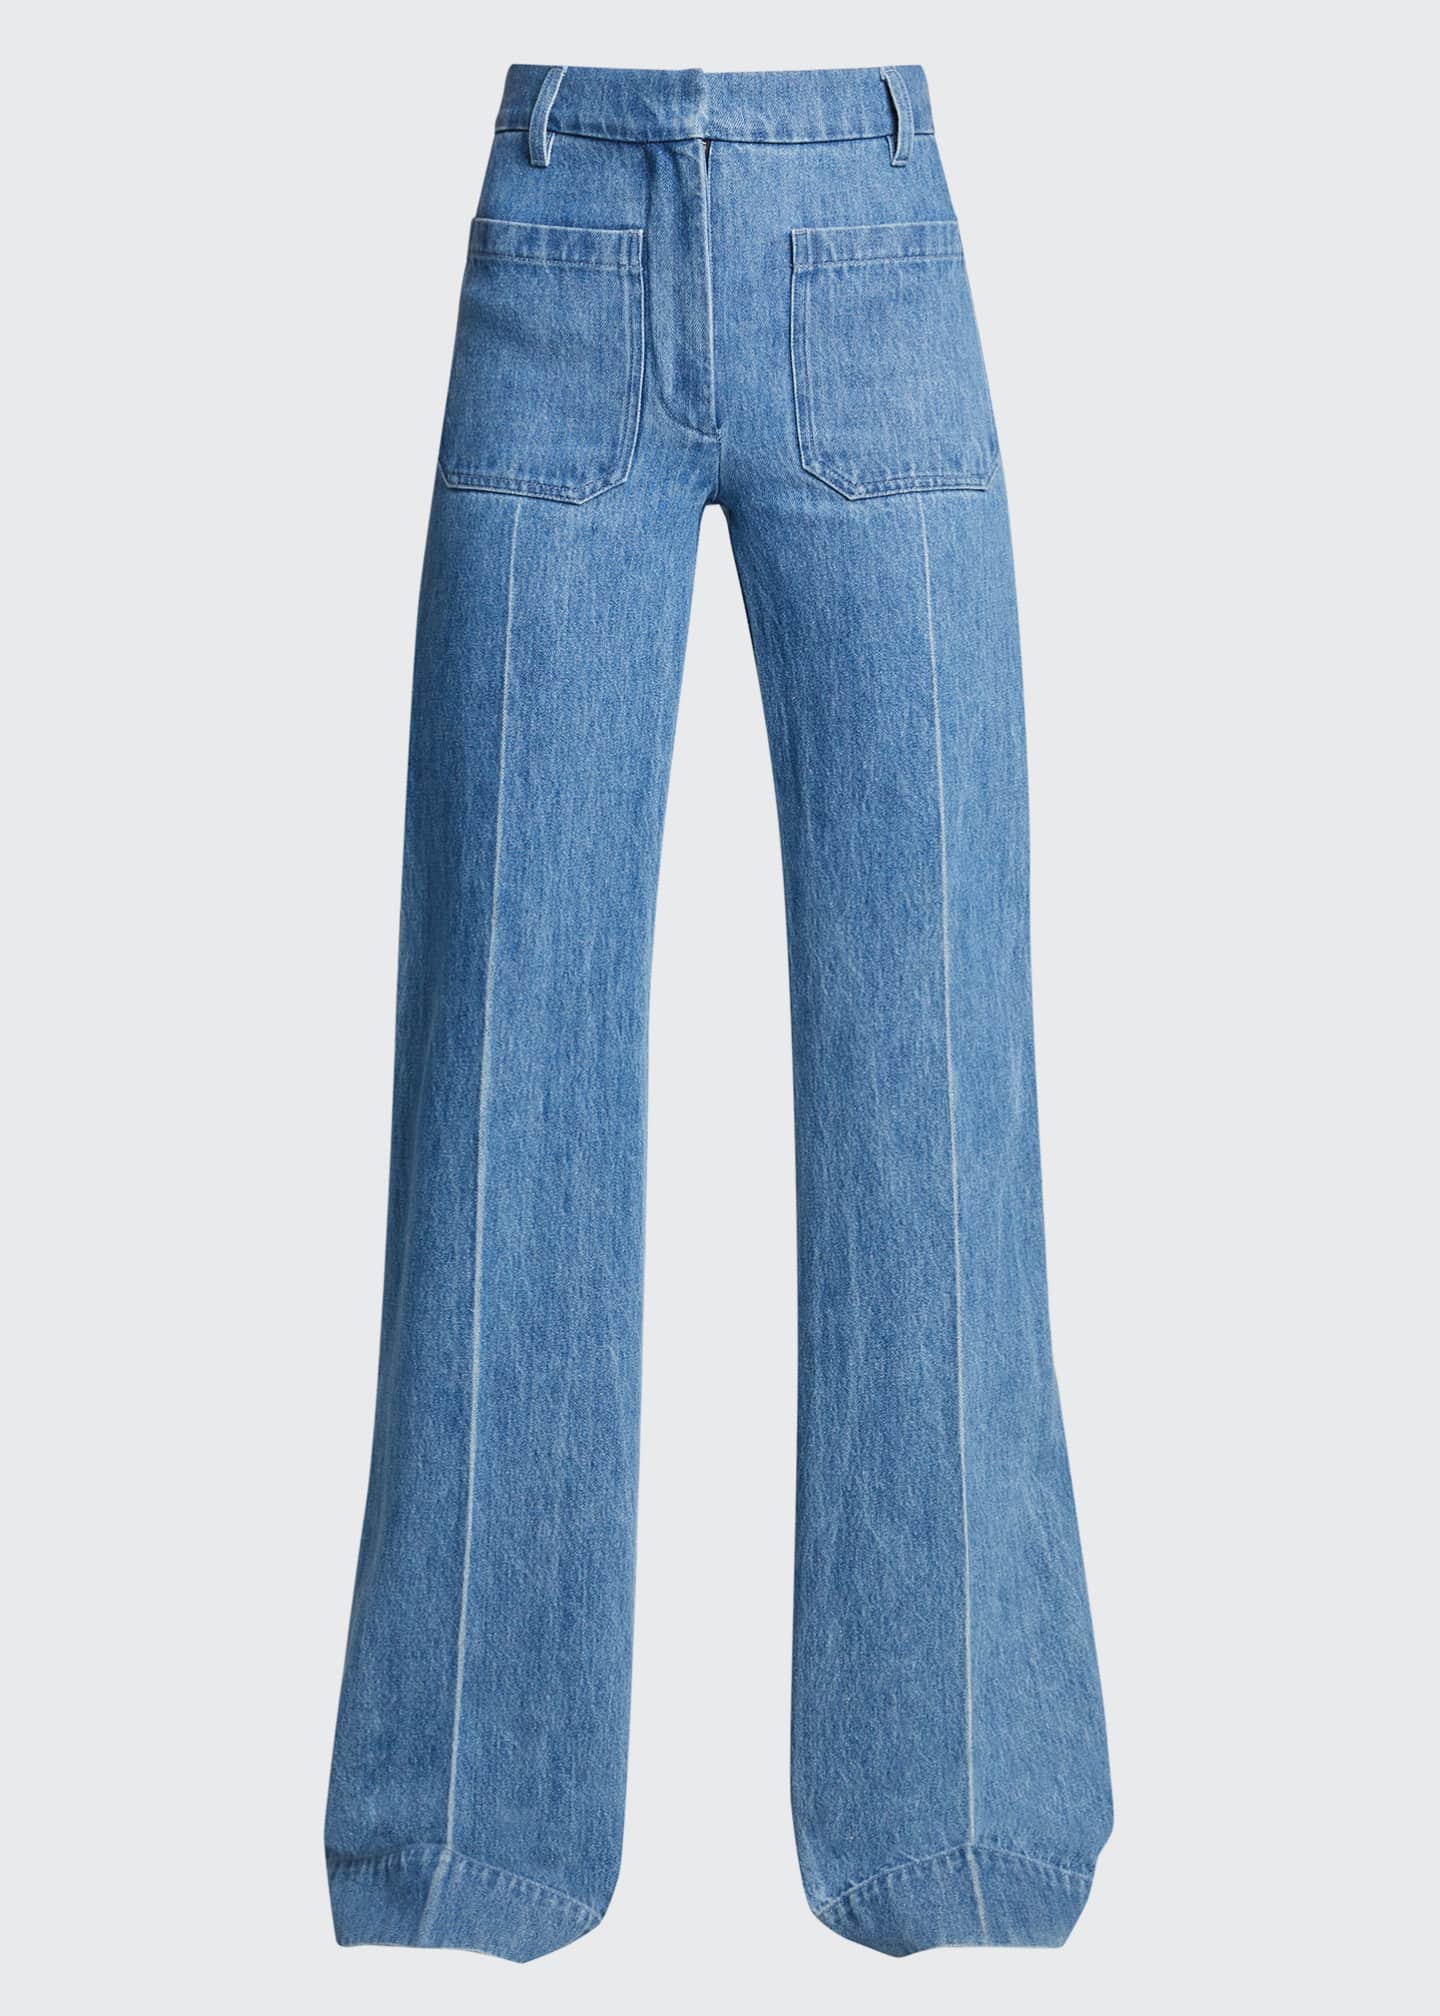 Victoria Beckham High-Waist Patch Pocket Denim Jeans - Bergdorf Goodman